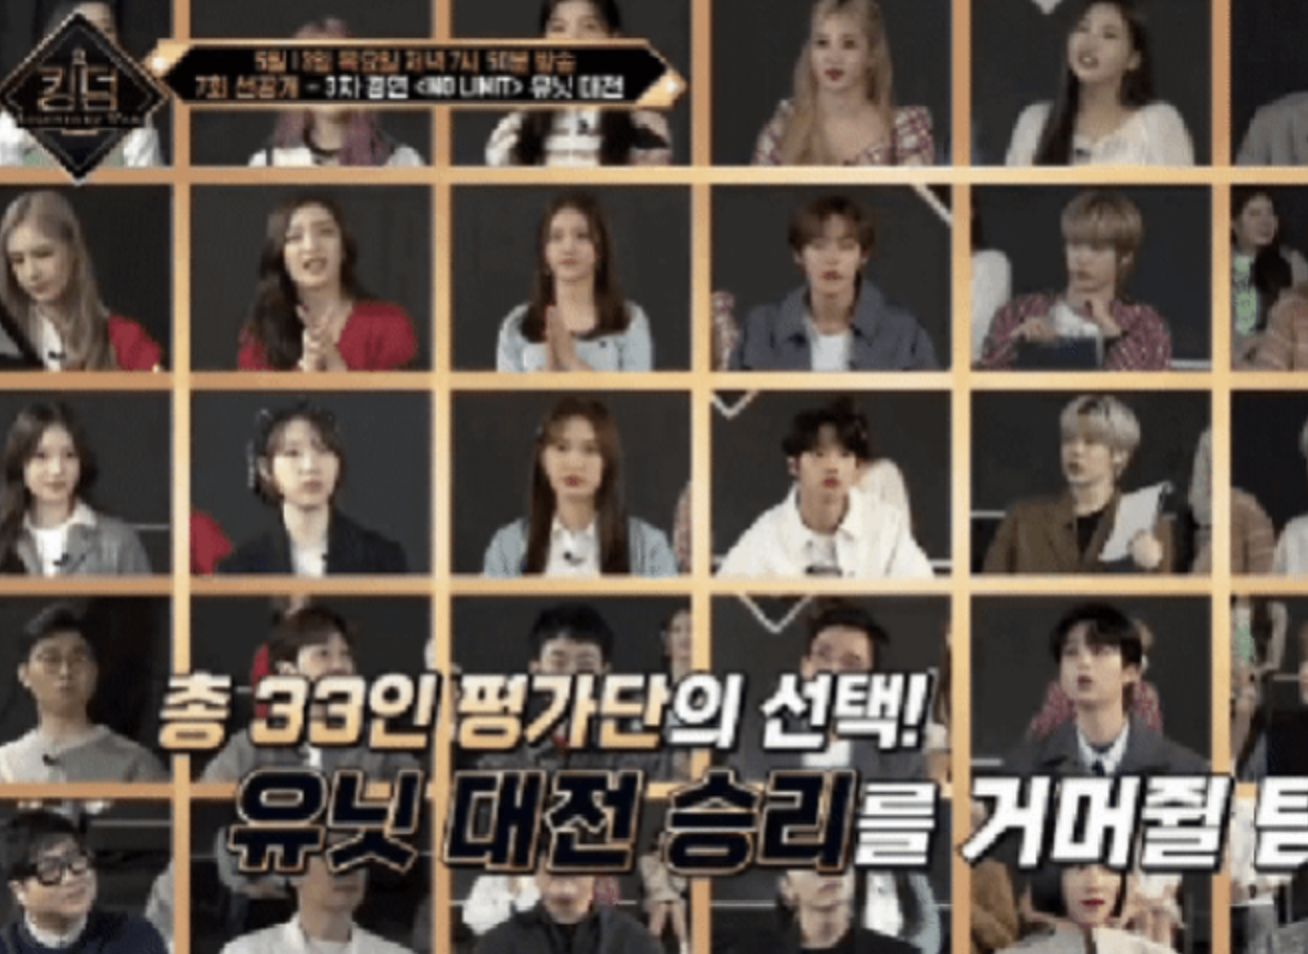 Mnet enfrenta críticas por invitar a grupos novatos como evaluadores para 'Kingdom'